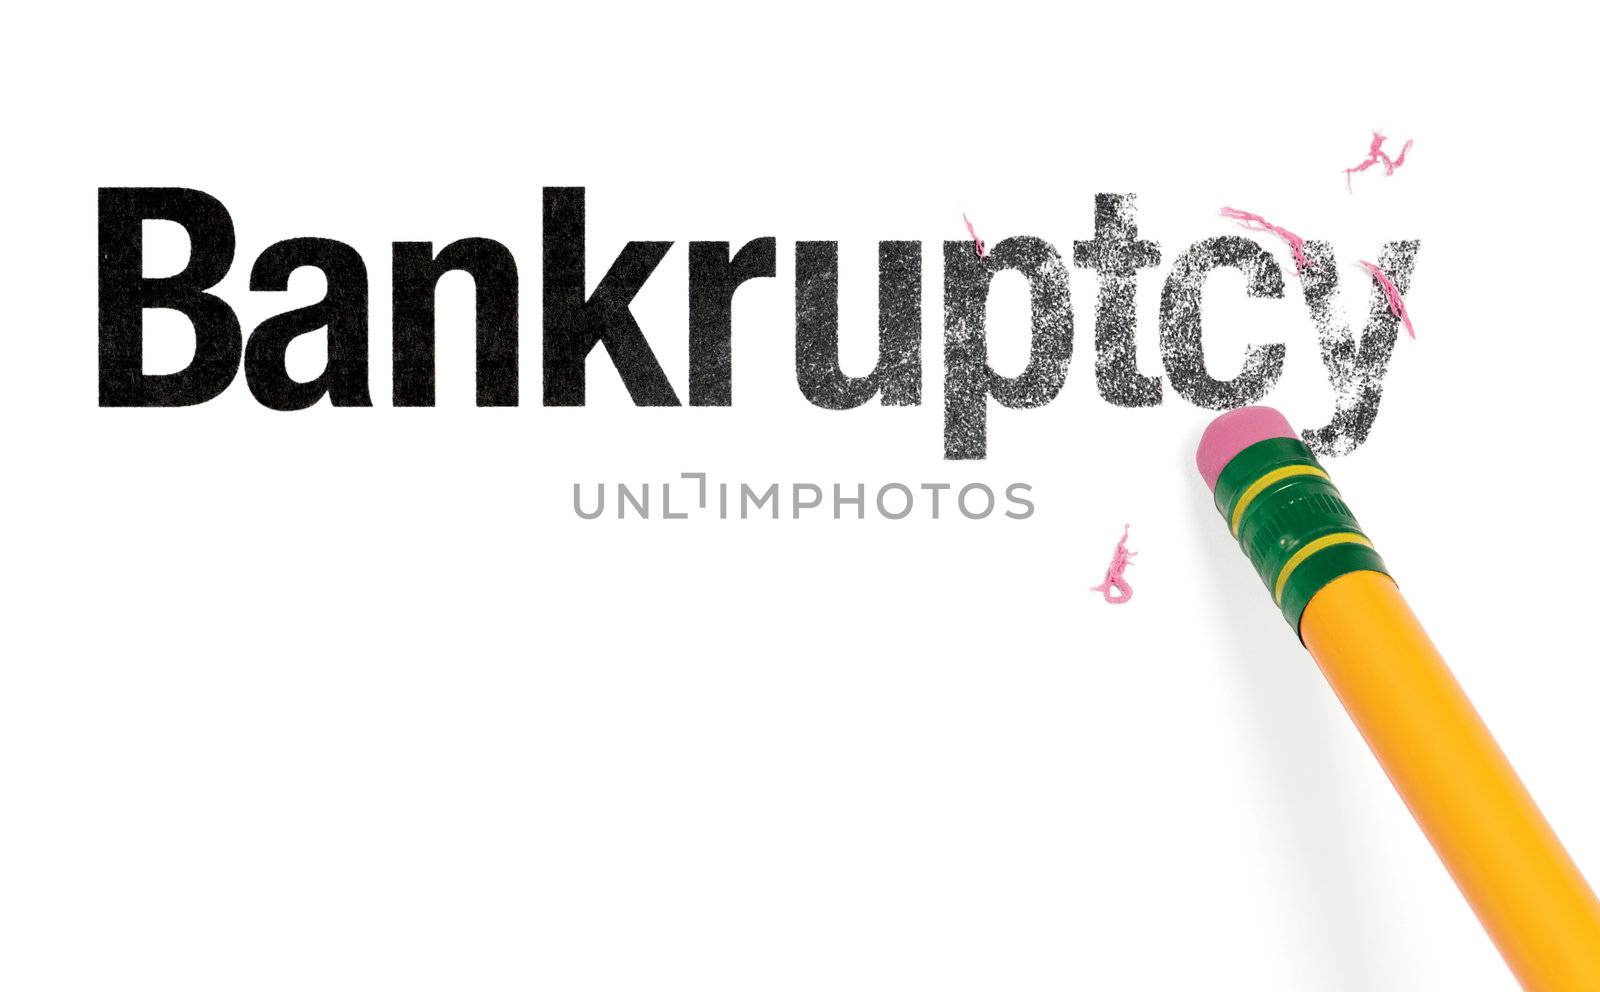 Erasing Bankruptcy by Em3